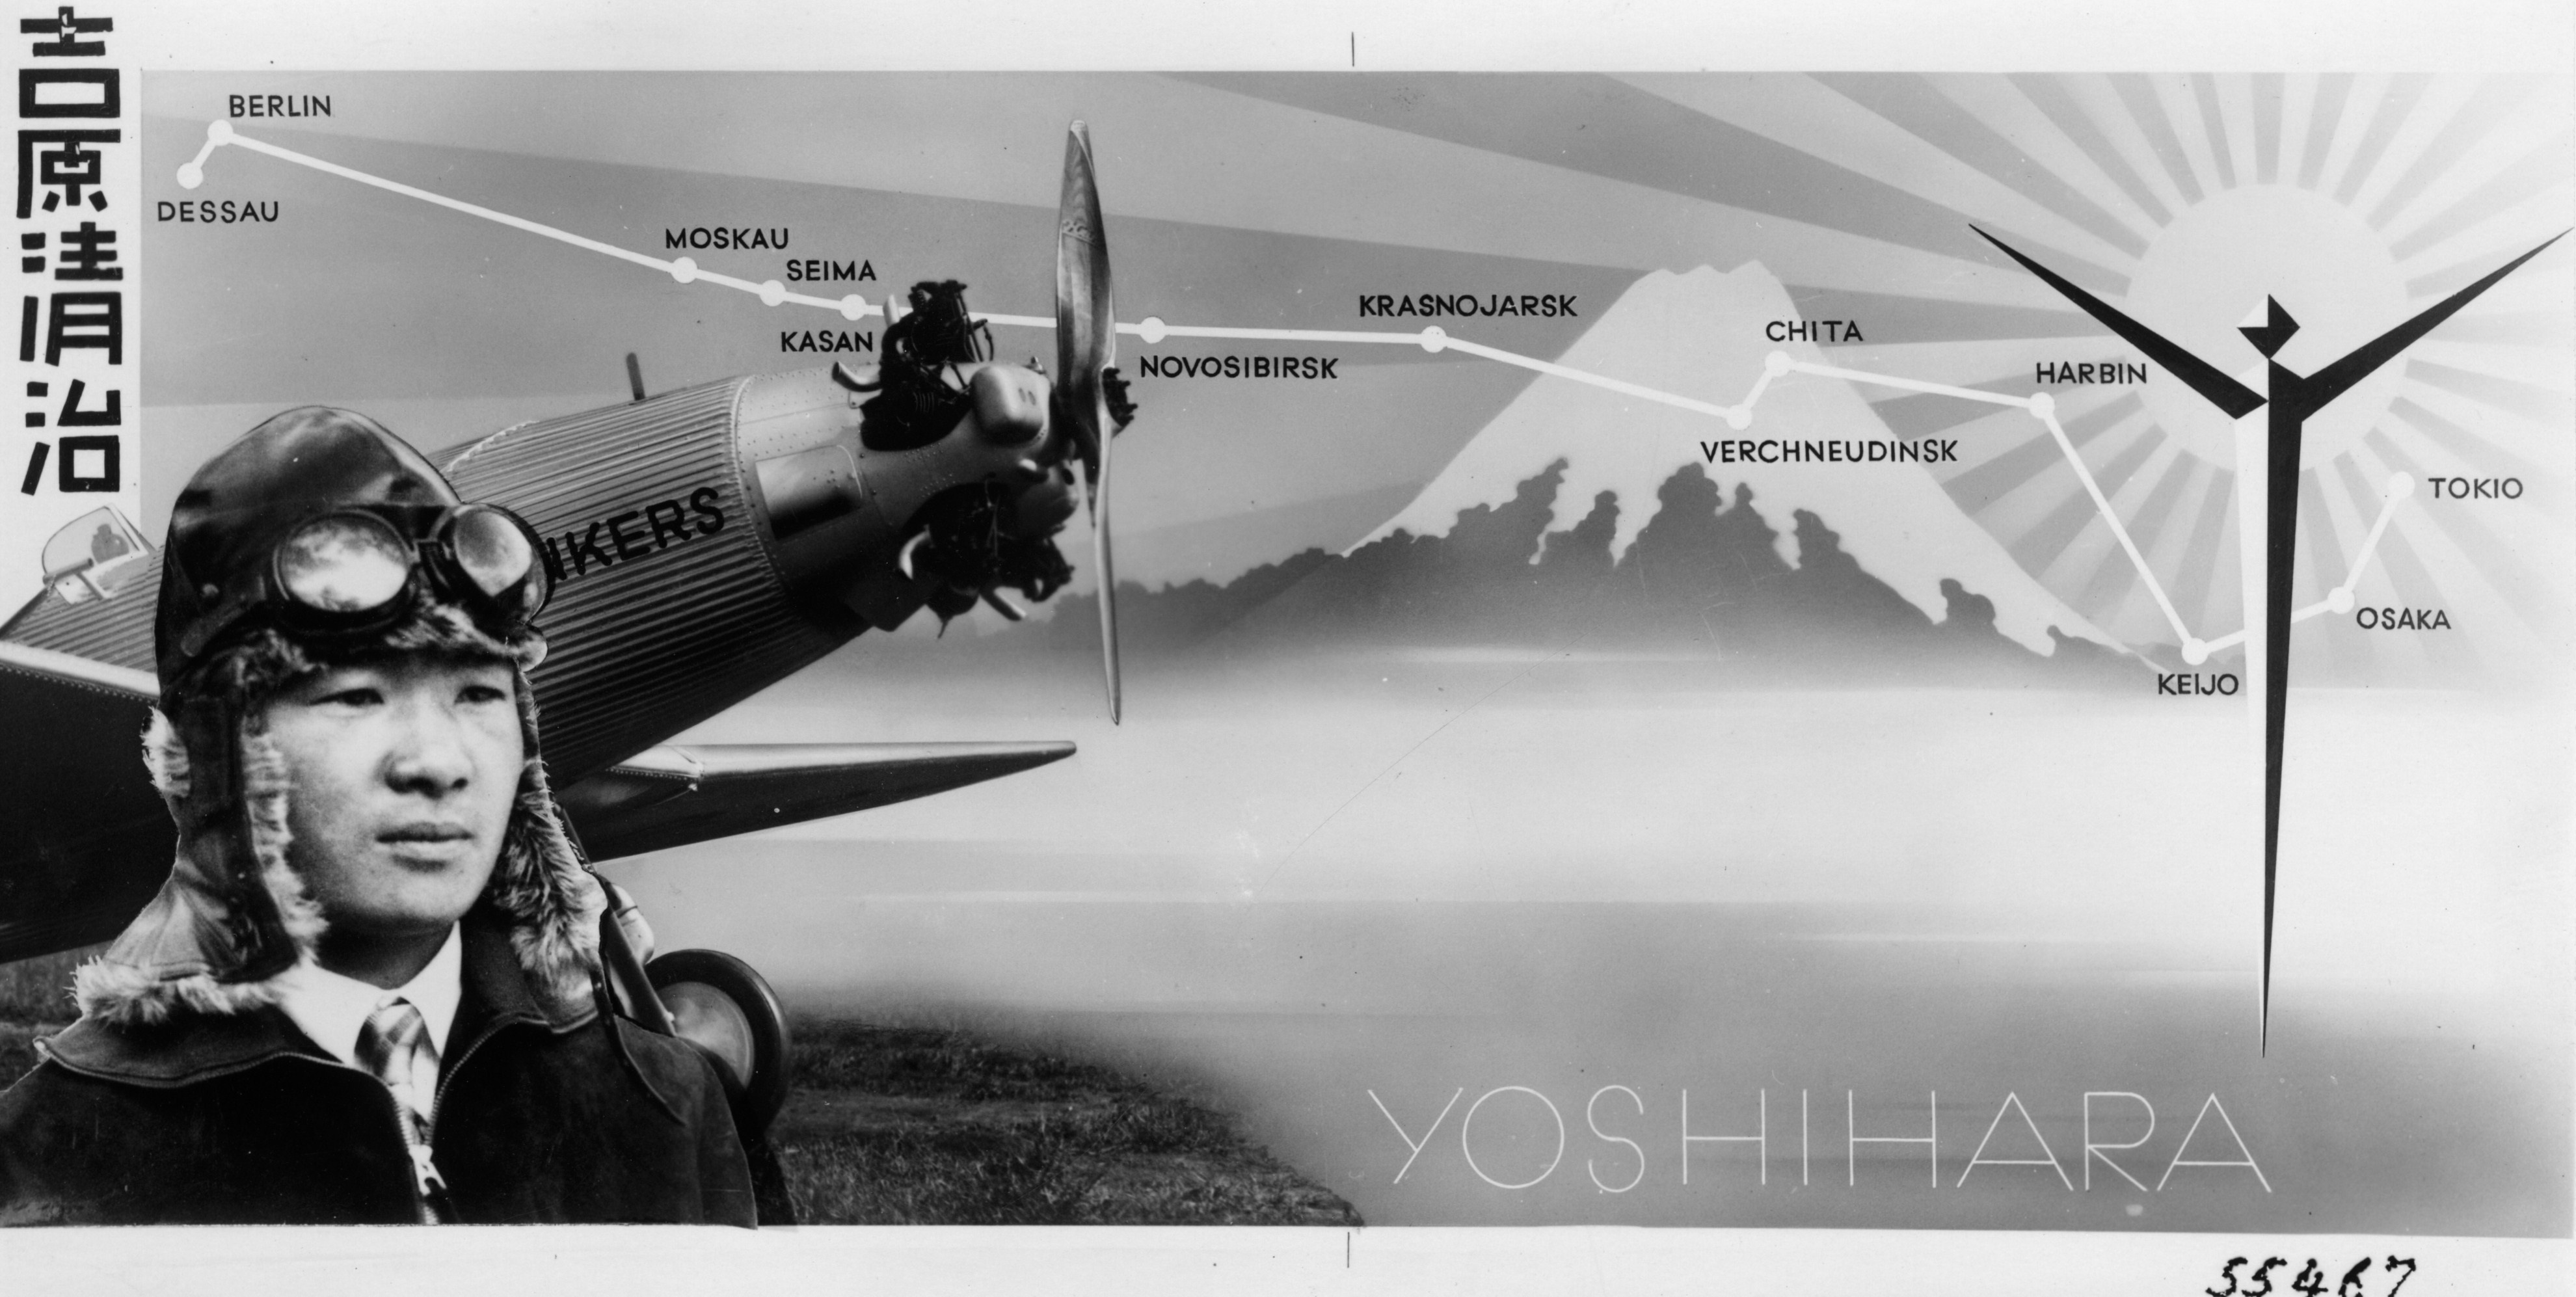 Der japanische Sportflieger und Redakteur Yoshihara und seine Route von Dessau nach Tokio